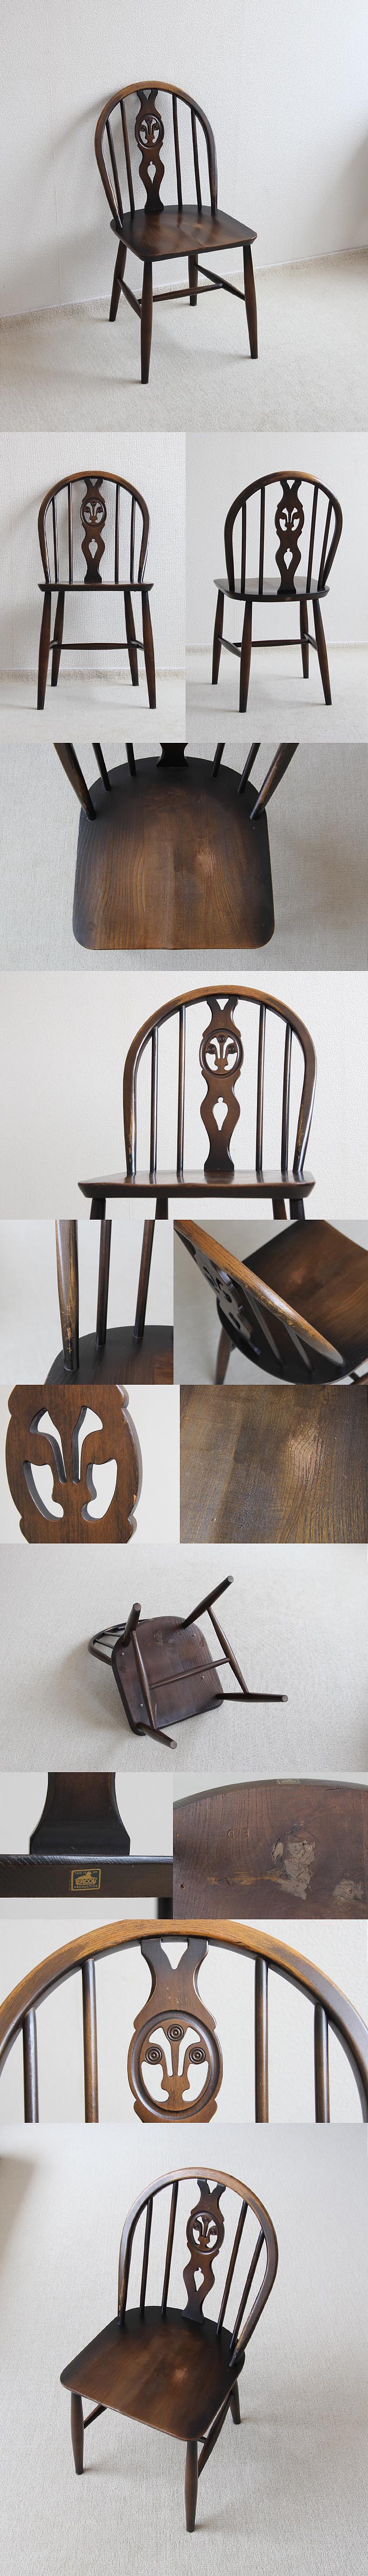 イギリス アンティーク アーコール シスルバックチェア 木製椅子 英国 家具「ercol」V-435